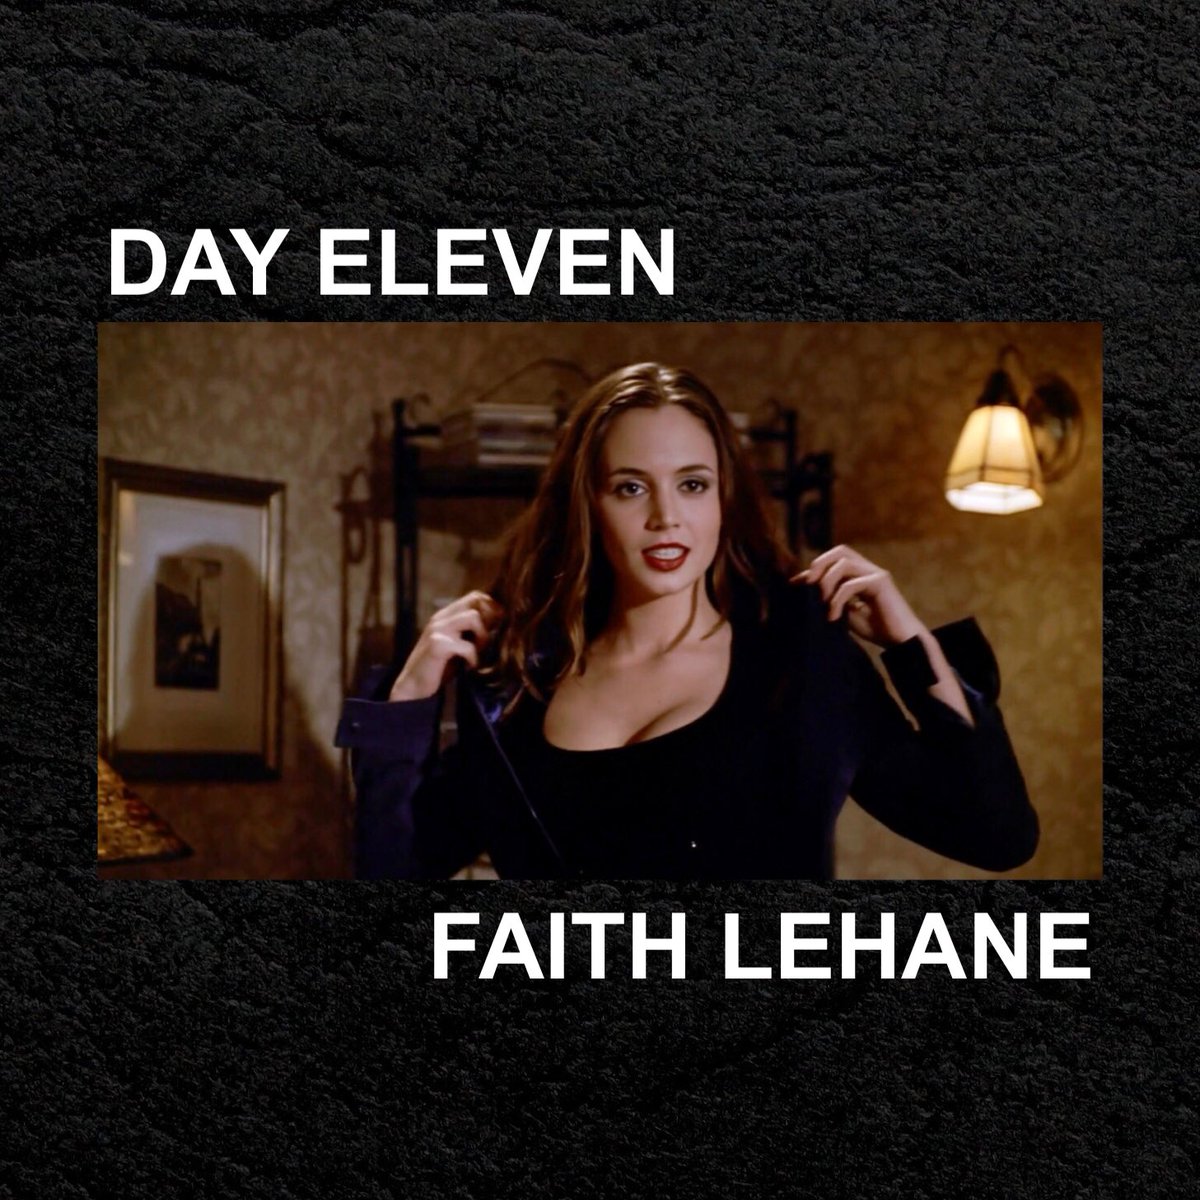 day eleven: faith lehane